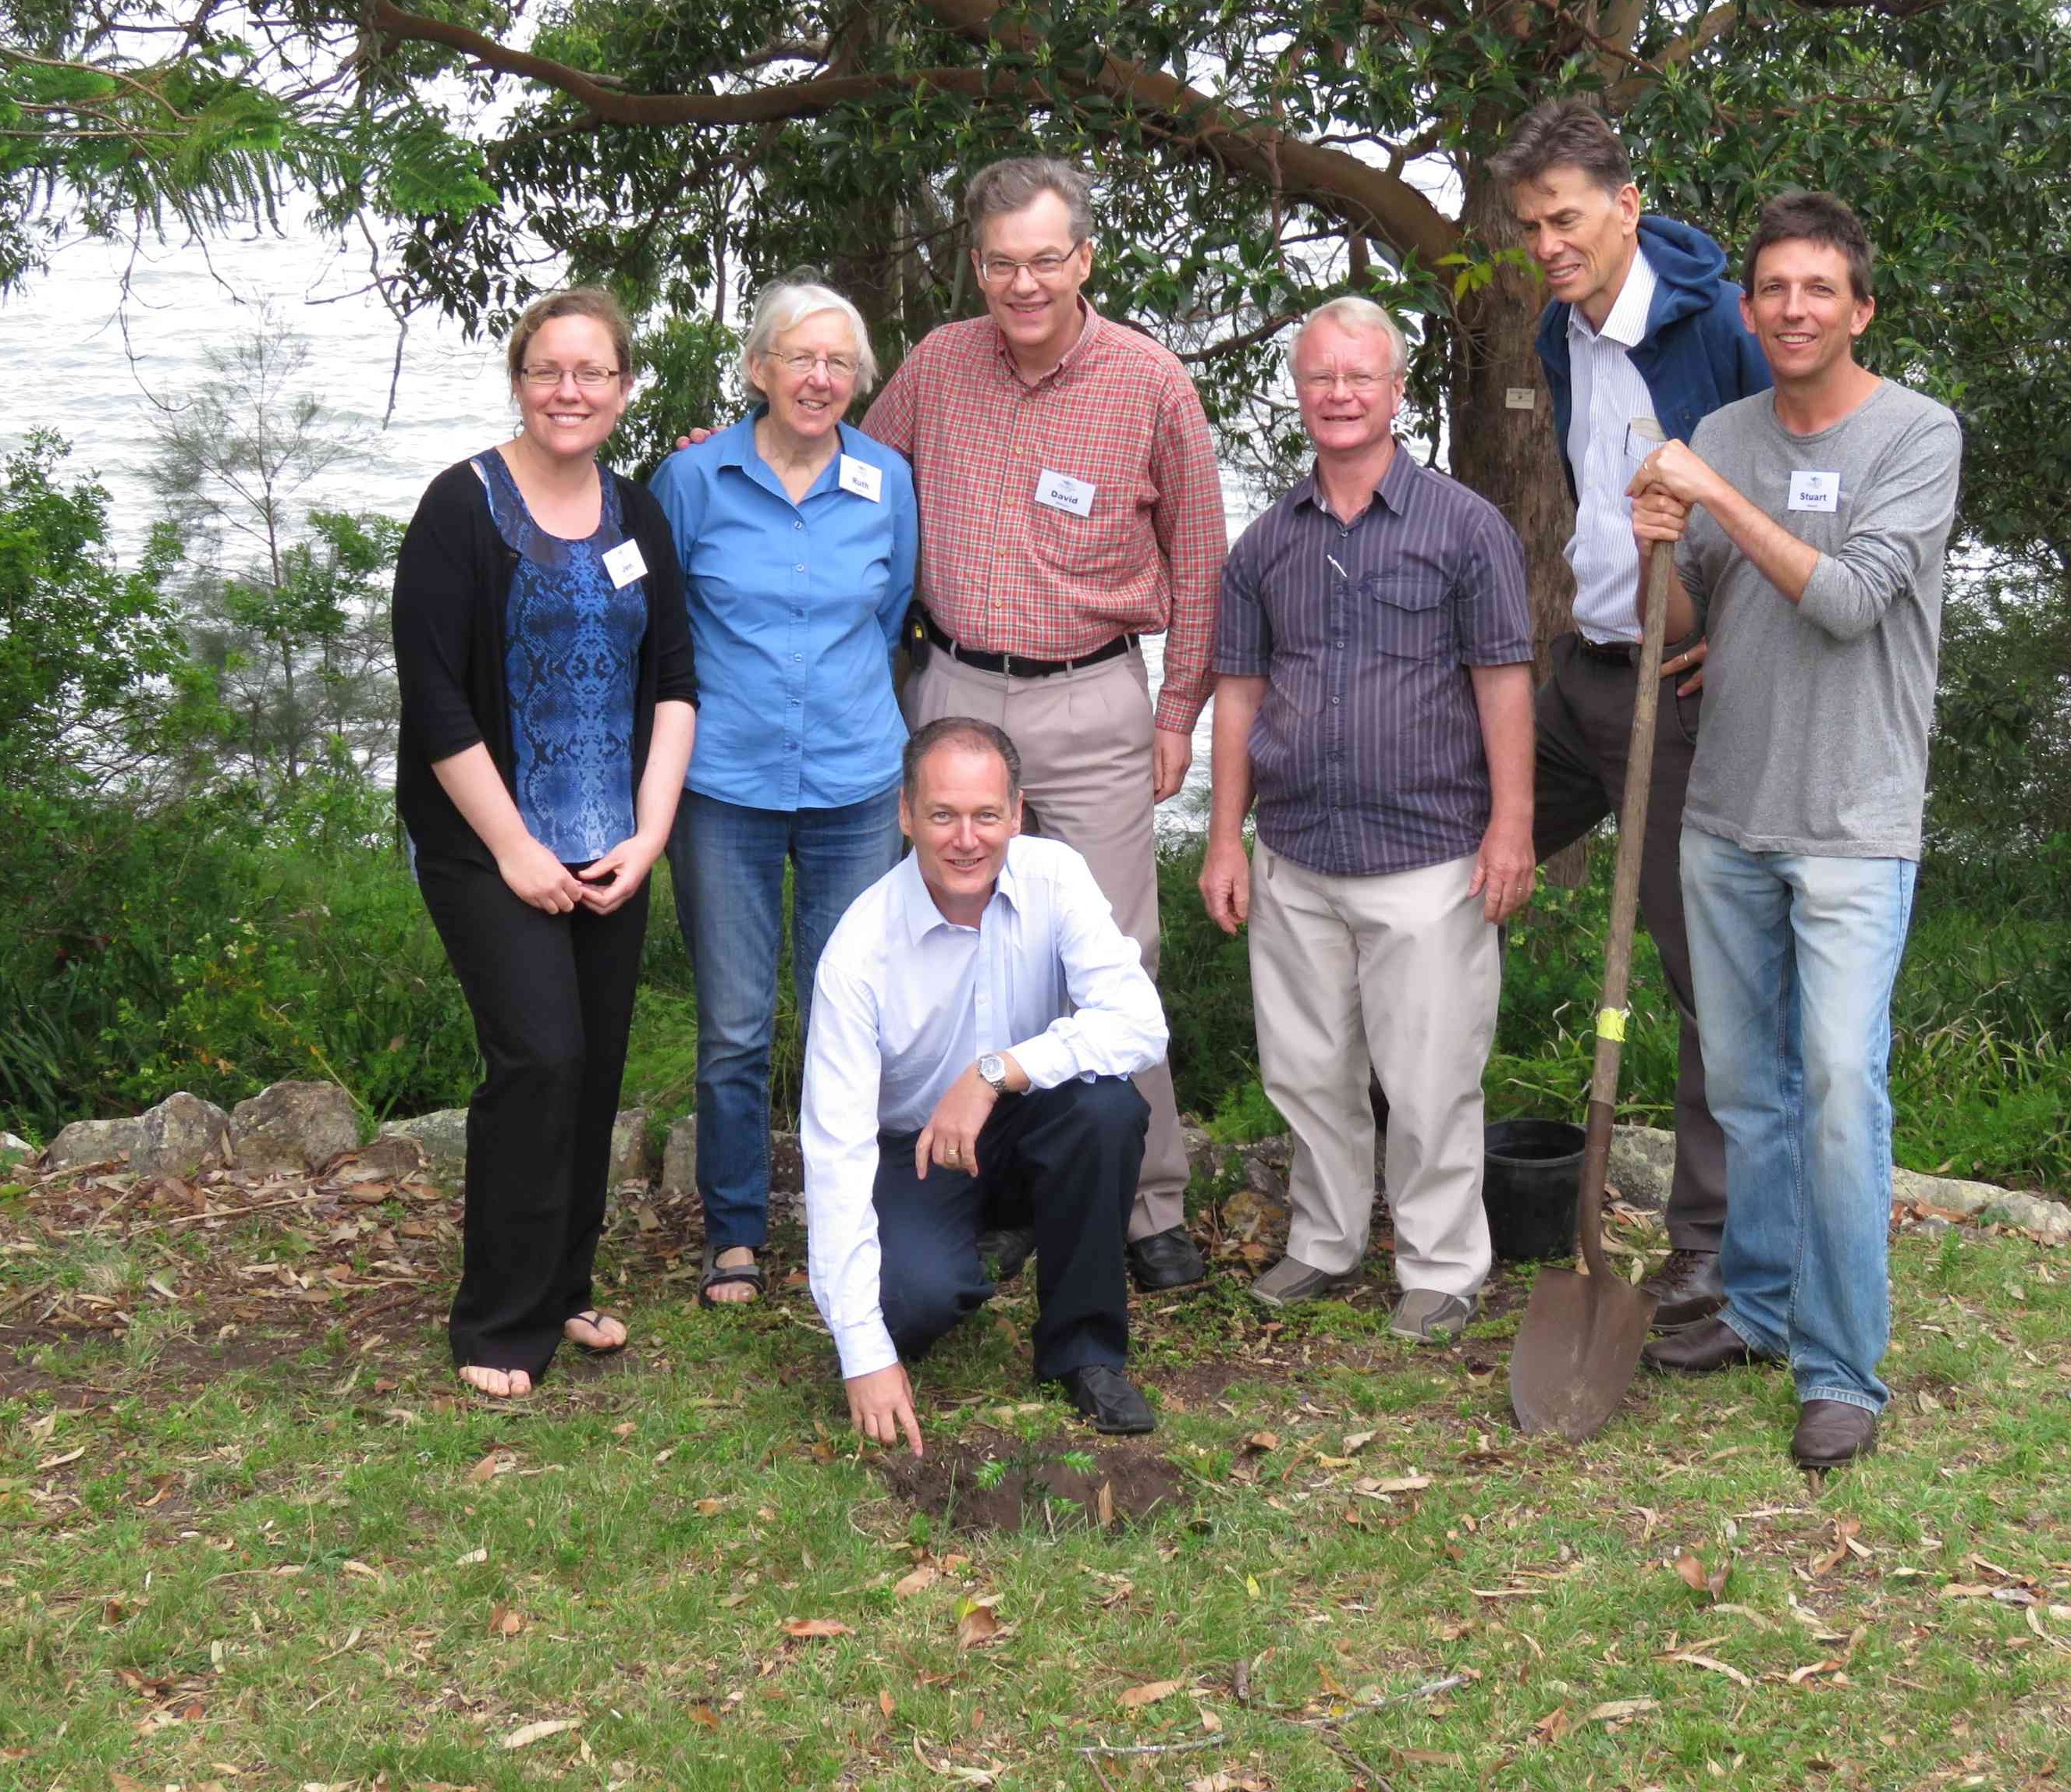 Chris Naylor (accroupi, plantant un arbre) au cours de la 1ère réunion nationale à Tahlee en Octobre 2015, avec des membres et des personnes du Conseil d’Administration. A partir de la gauche: Jen Schabel (NSW), Ruth Colman (NSW), David Williams (SA), John Anderson (NSW), Roger Jaensch (QLD), Stuart Blanch (NSW). Administrateurs non présents sur la photo: Sally Shaw (SA), Anna Radkovic (VIC), Philip Hughes (VIC) et Wendy Hoare (SA).